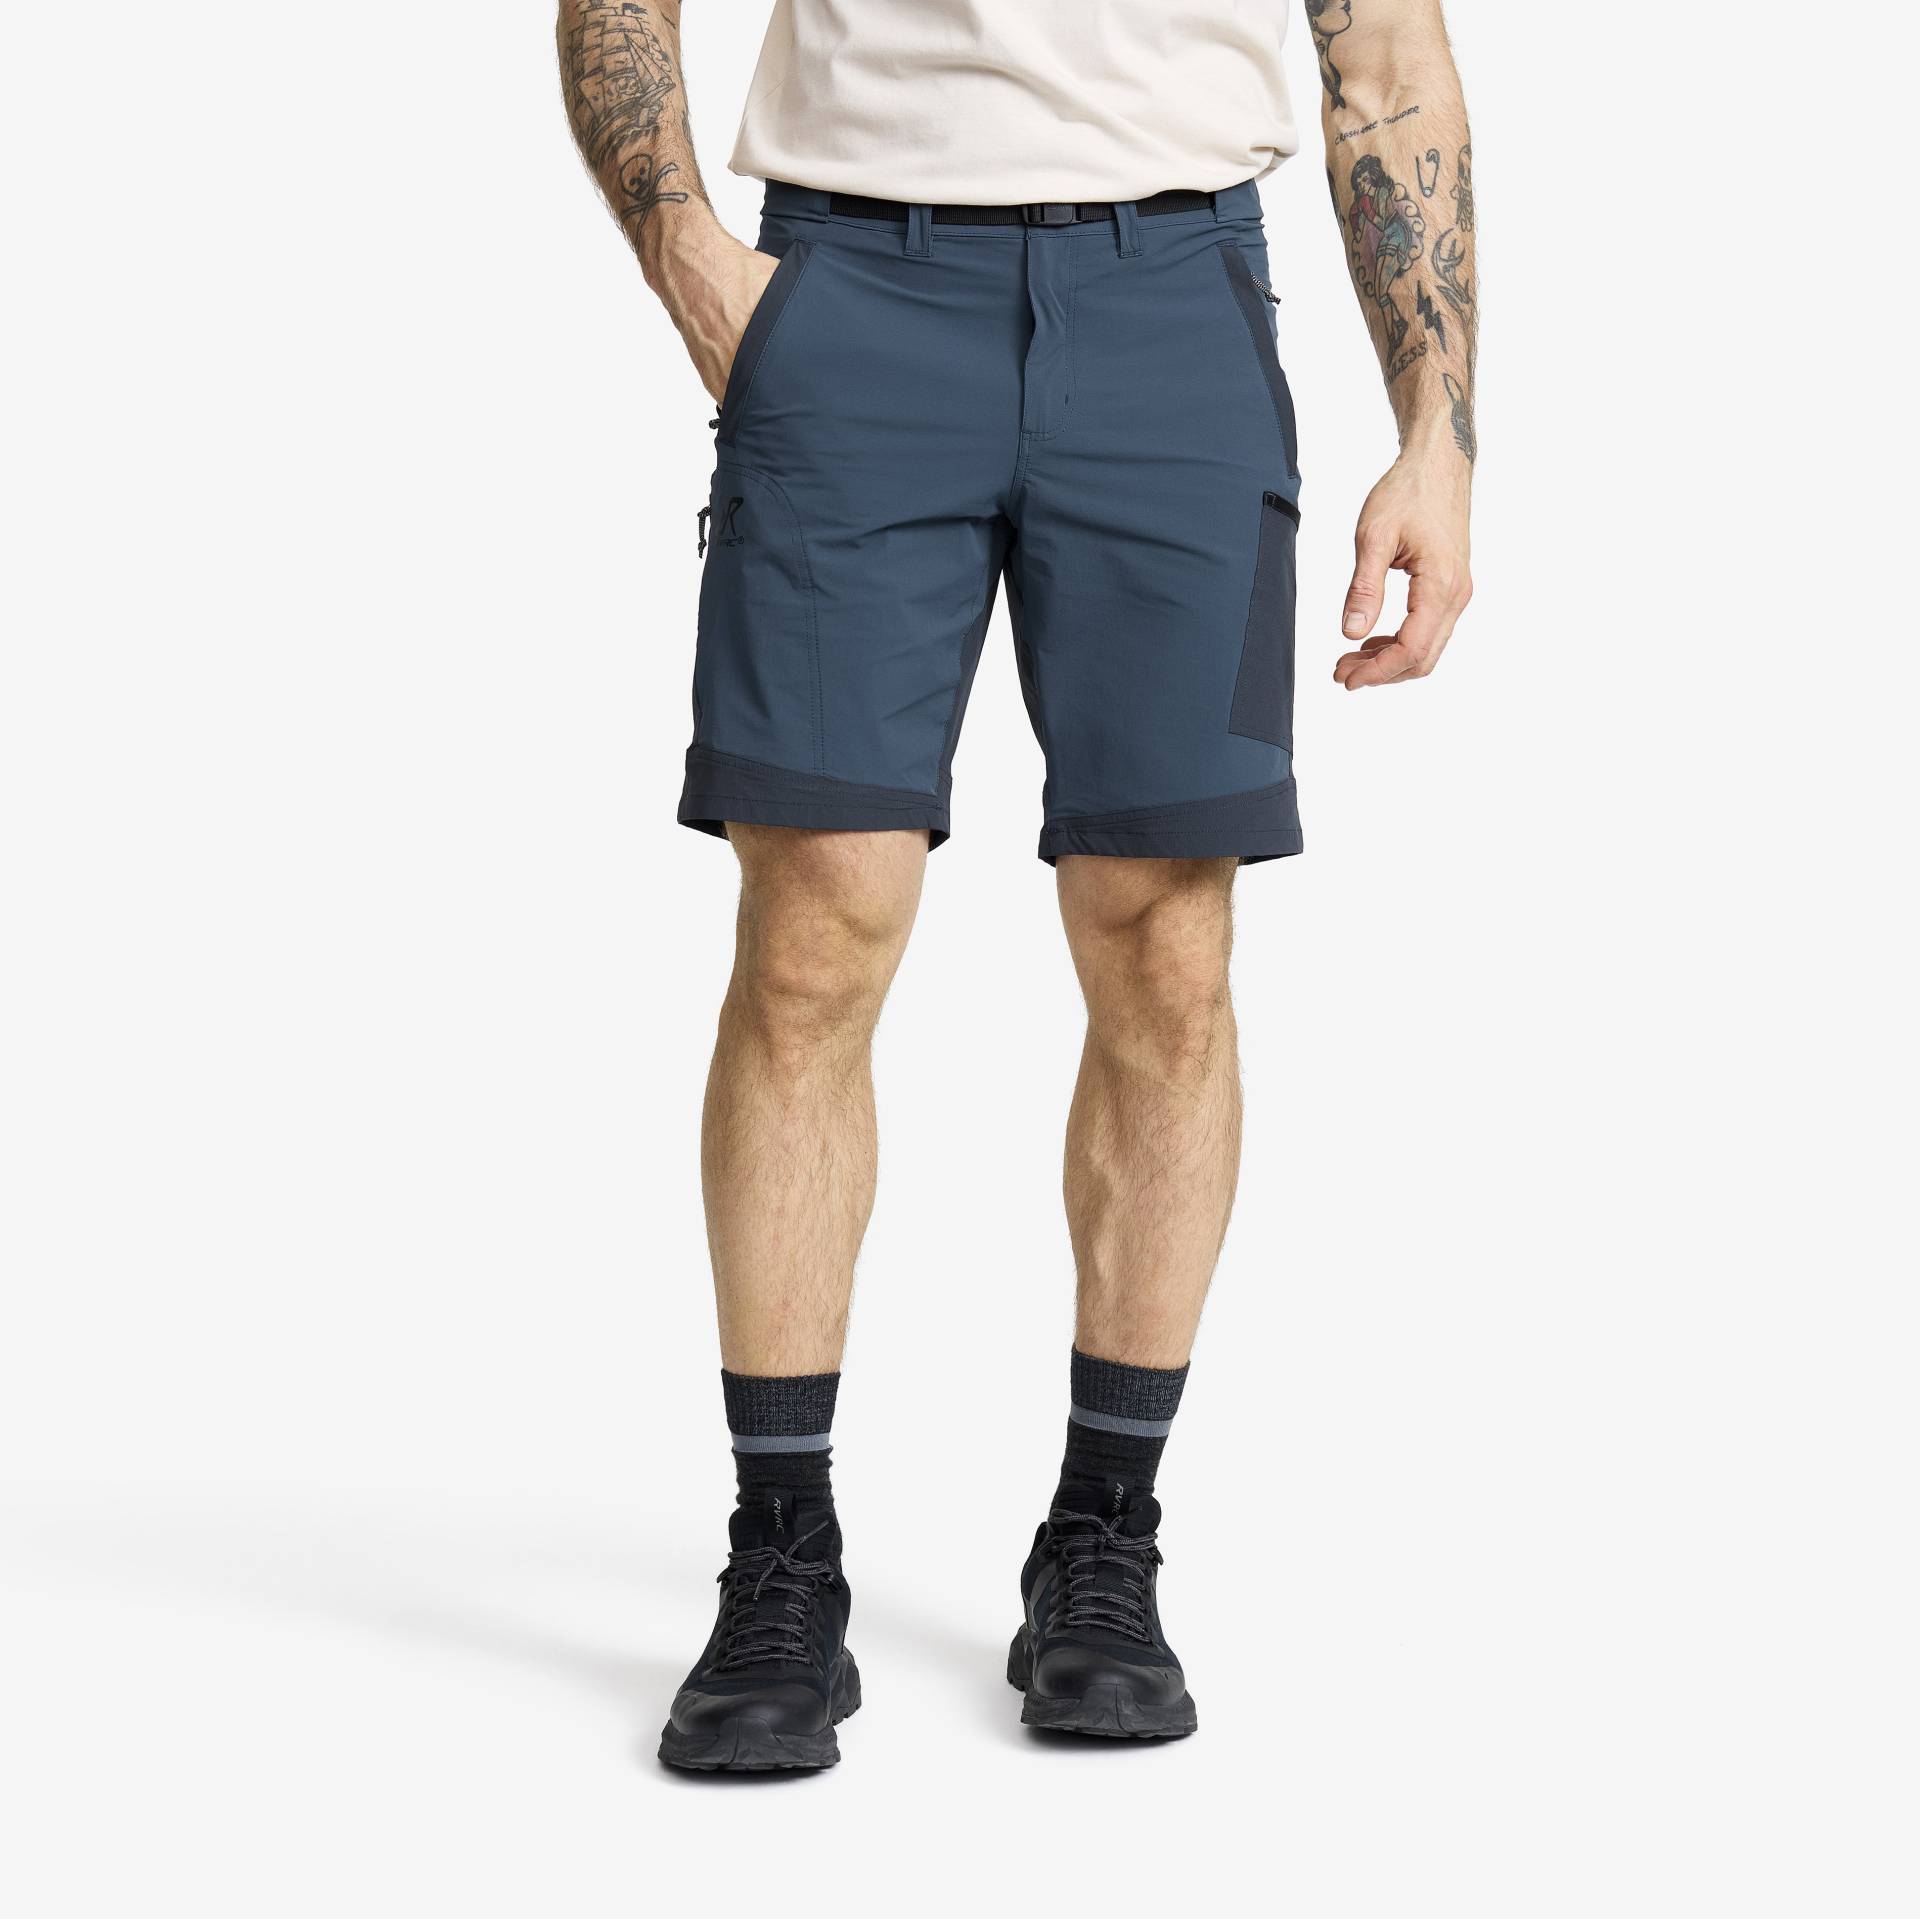 Elevate Lightweight Pro Shorts Herren Moonlit Ocean/Blueberry, Größe:3XL - Hosen > Shorts von RevolutionRace